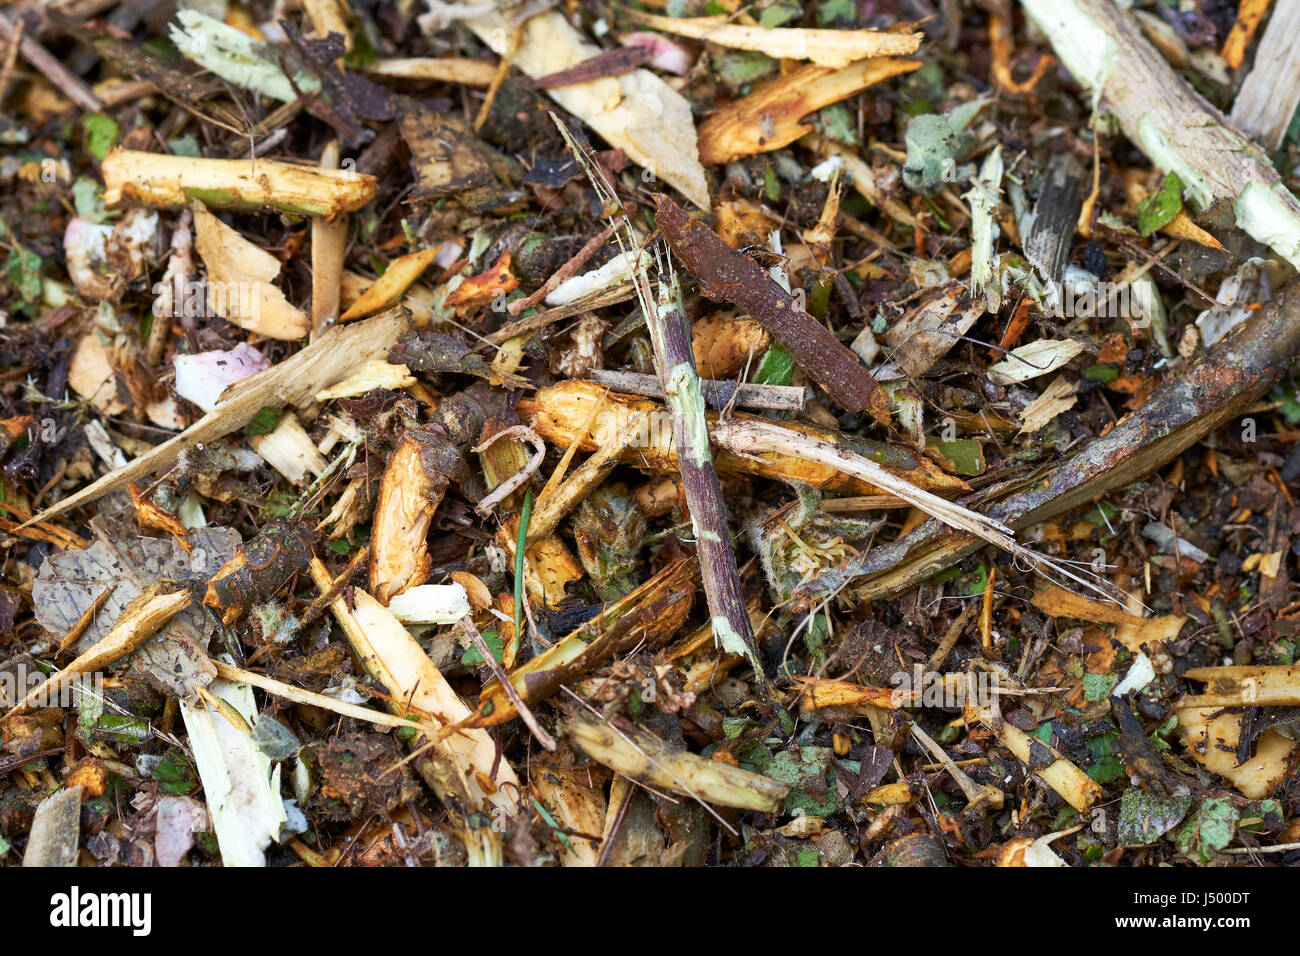 Les déchets verts des jardins déchiquetés fraîchement d'être utilisés pour le compost et paillis une fois suffisamment décomposé, au Royaume-Uni. Banque D'Images